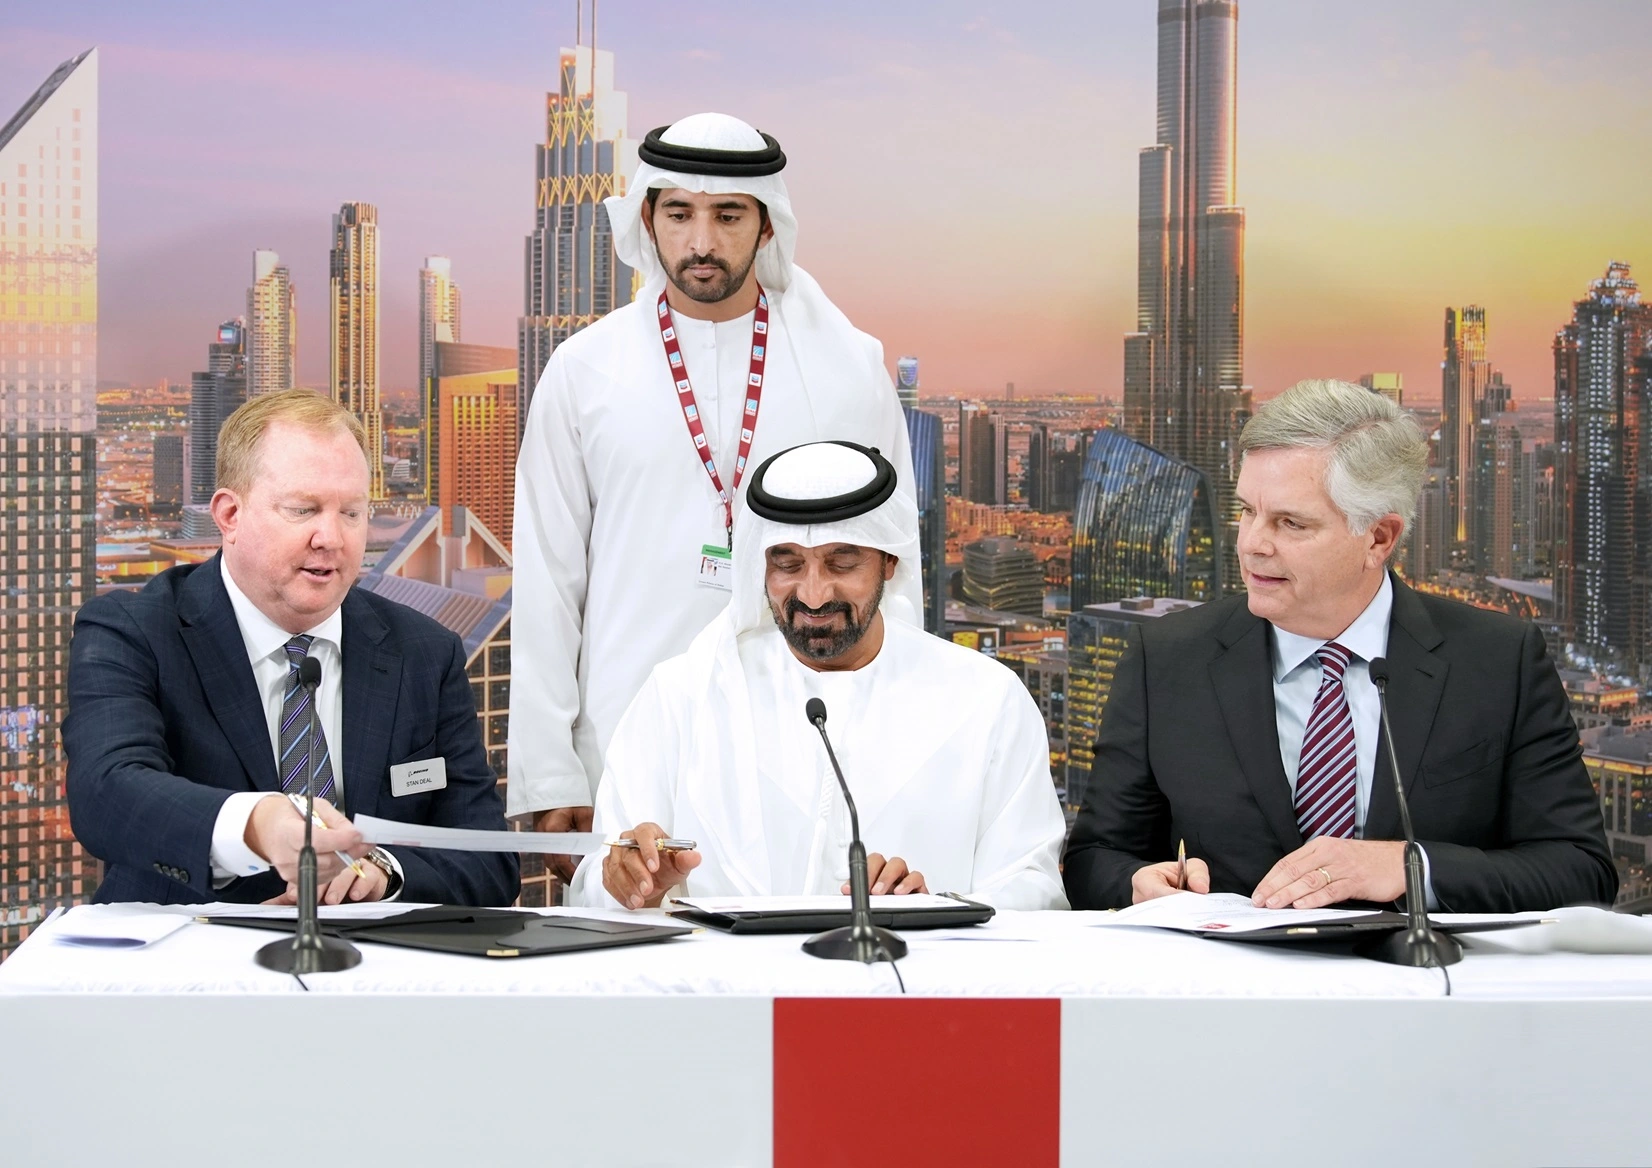 Az Emirates 52 milliárd dolláros megrendelést jelentett be